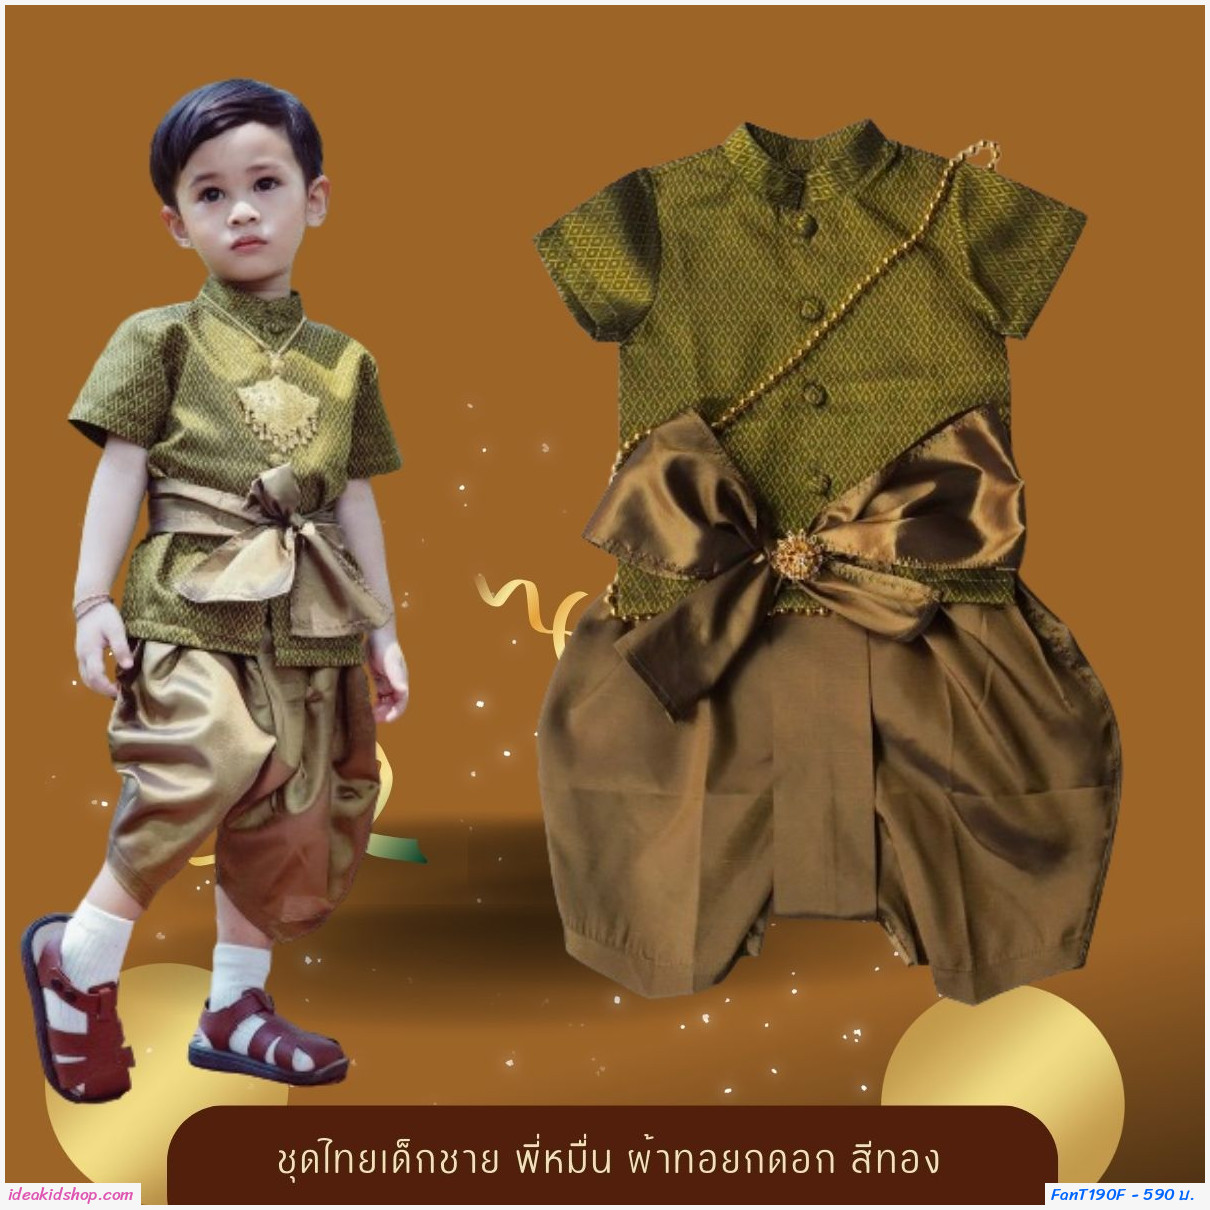 ชุดไทยเด็กชาย พี่หมื่น ผ้าทอยกดอก สีเหลืองทอง